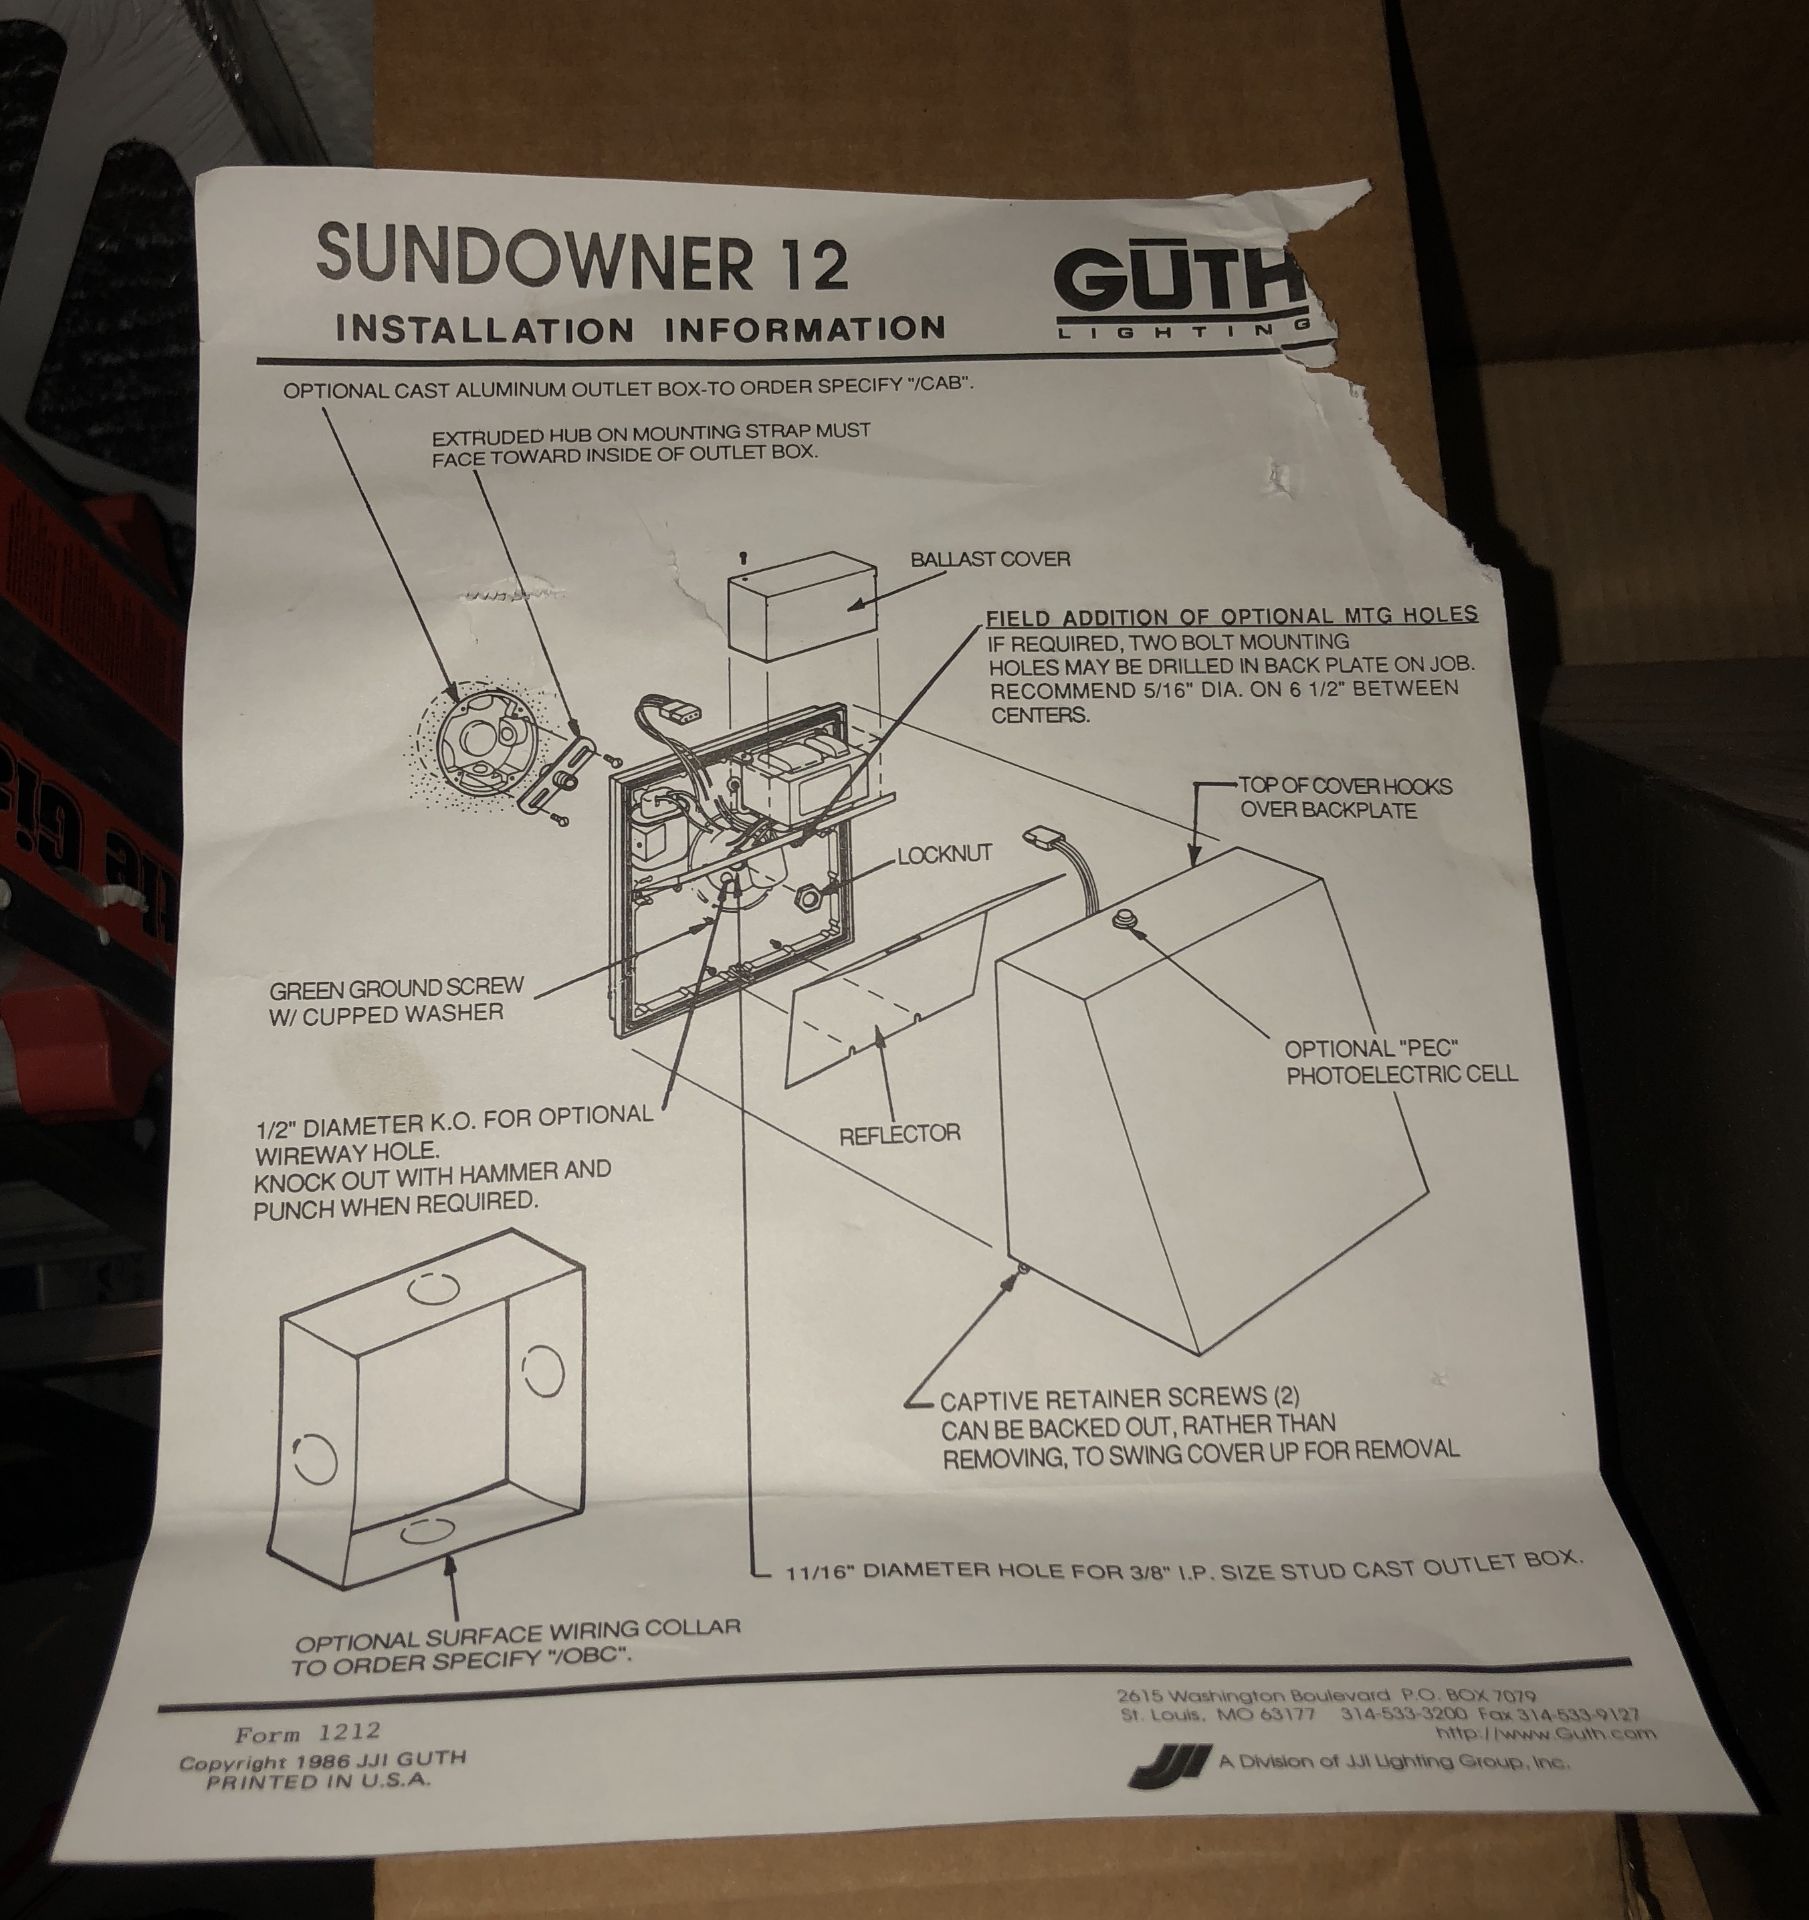 GUTH SUNDOWNER 12 COMMERCIAL FLOOD LIGHT BRAND NEW IN BOX $750 LIGHT - Image 2 of 3